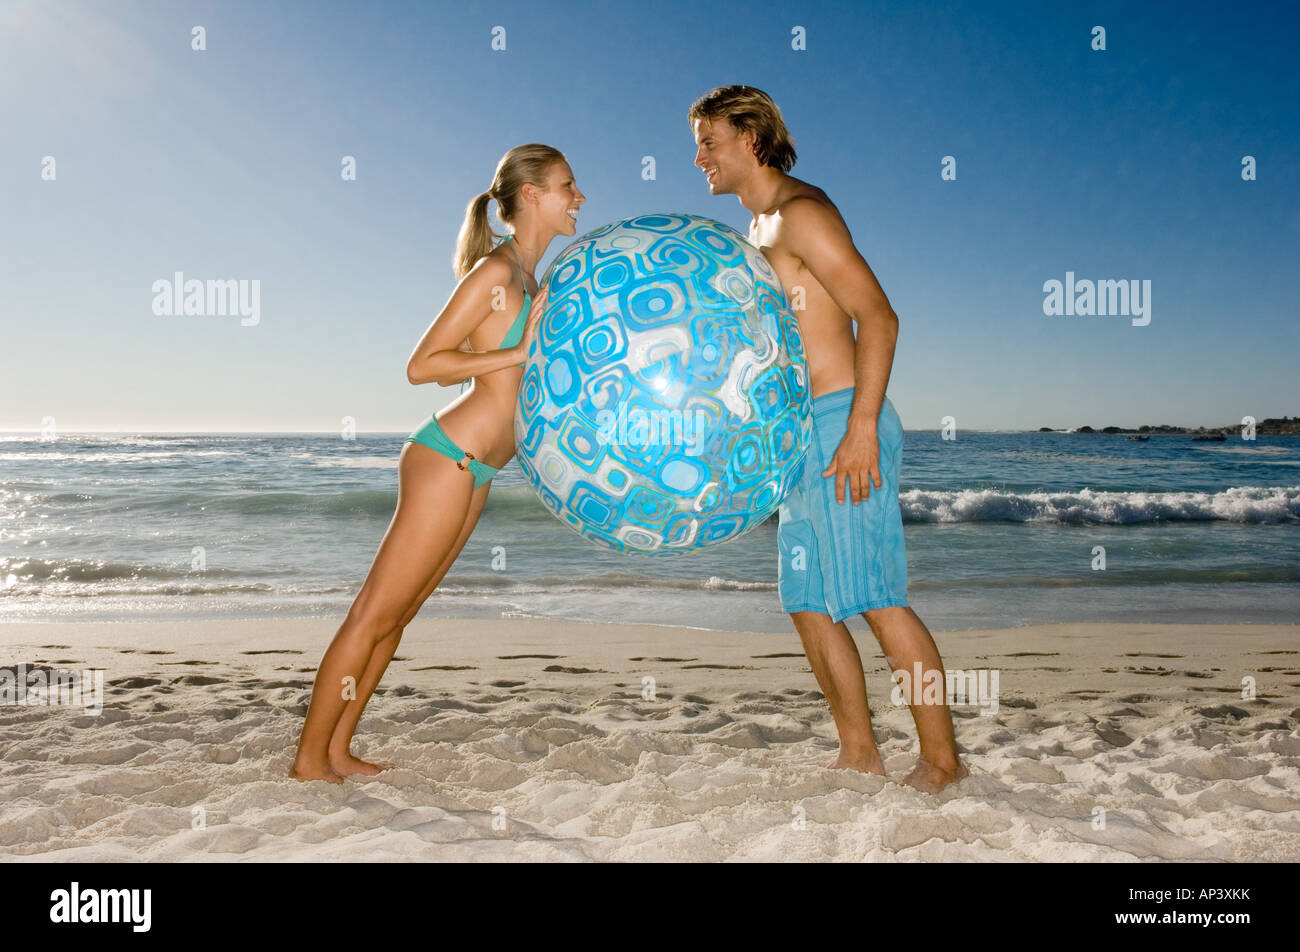 Paar-Holding-Beach-ball Stockfoto